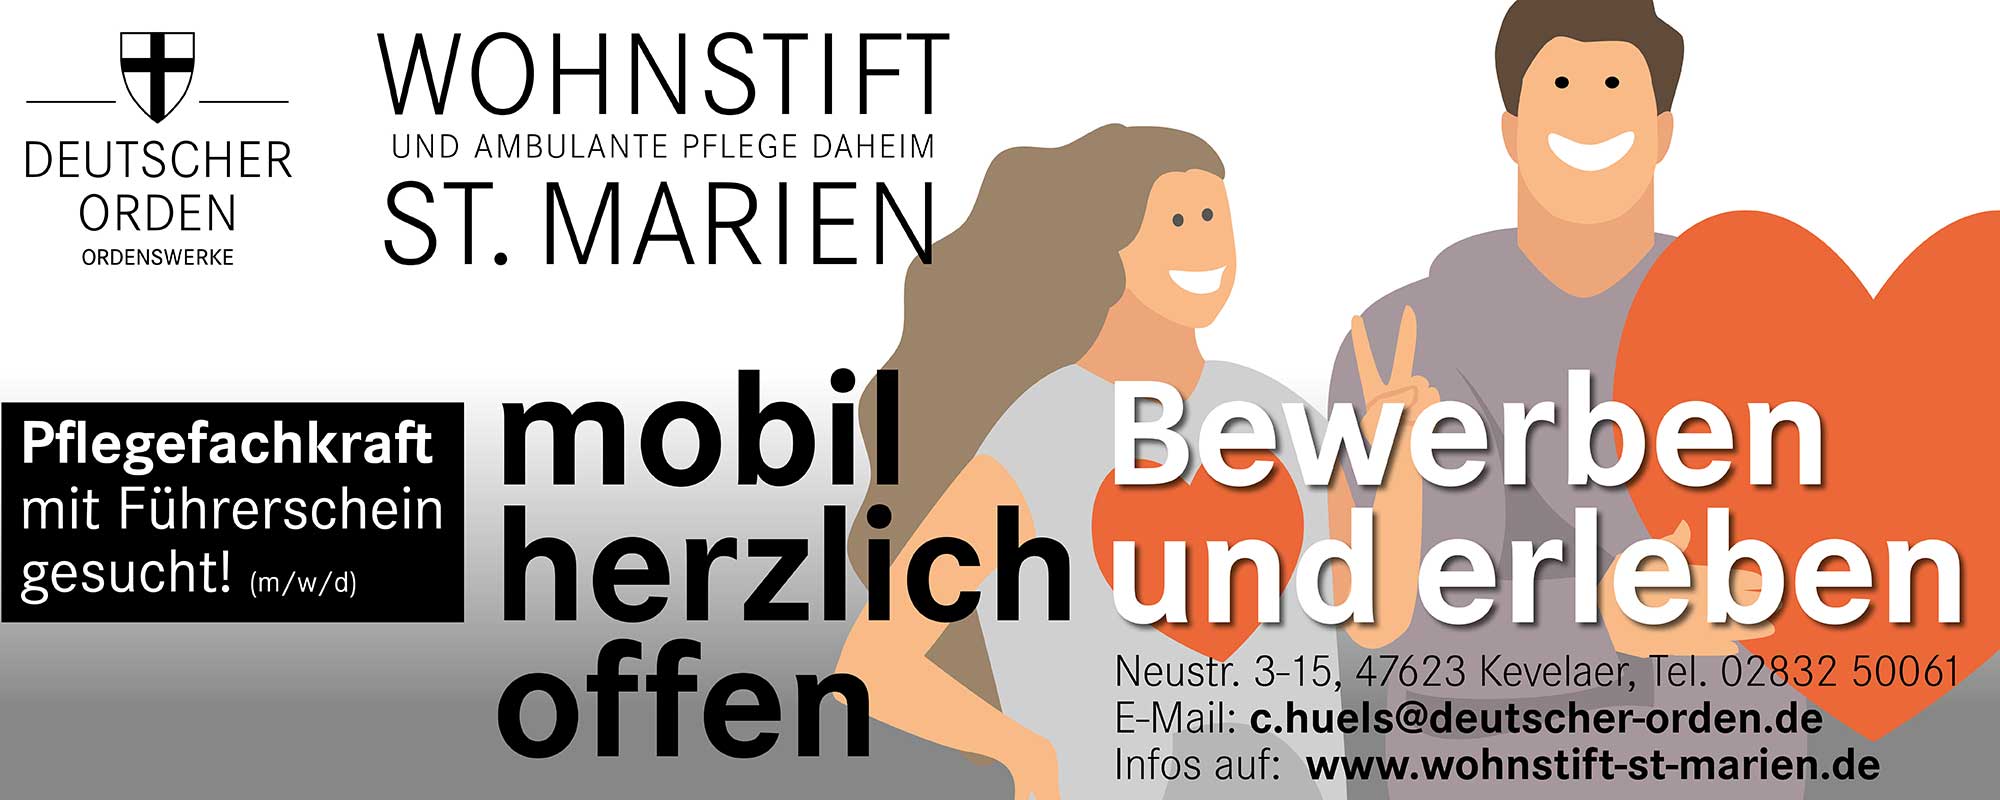 Flyer für Bewerber: Wohnstift Und Ambulante Pflege Daheim - St. Marien - "Pflegekraft mif Führerschein gesucht"